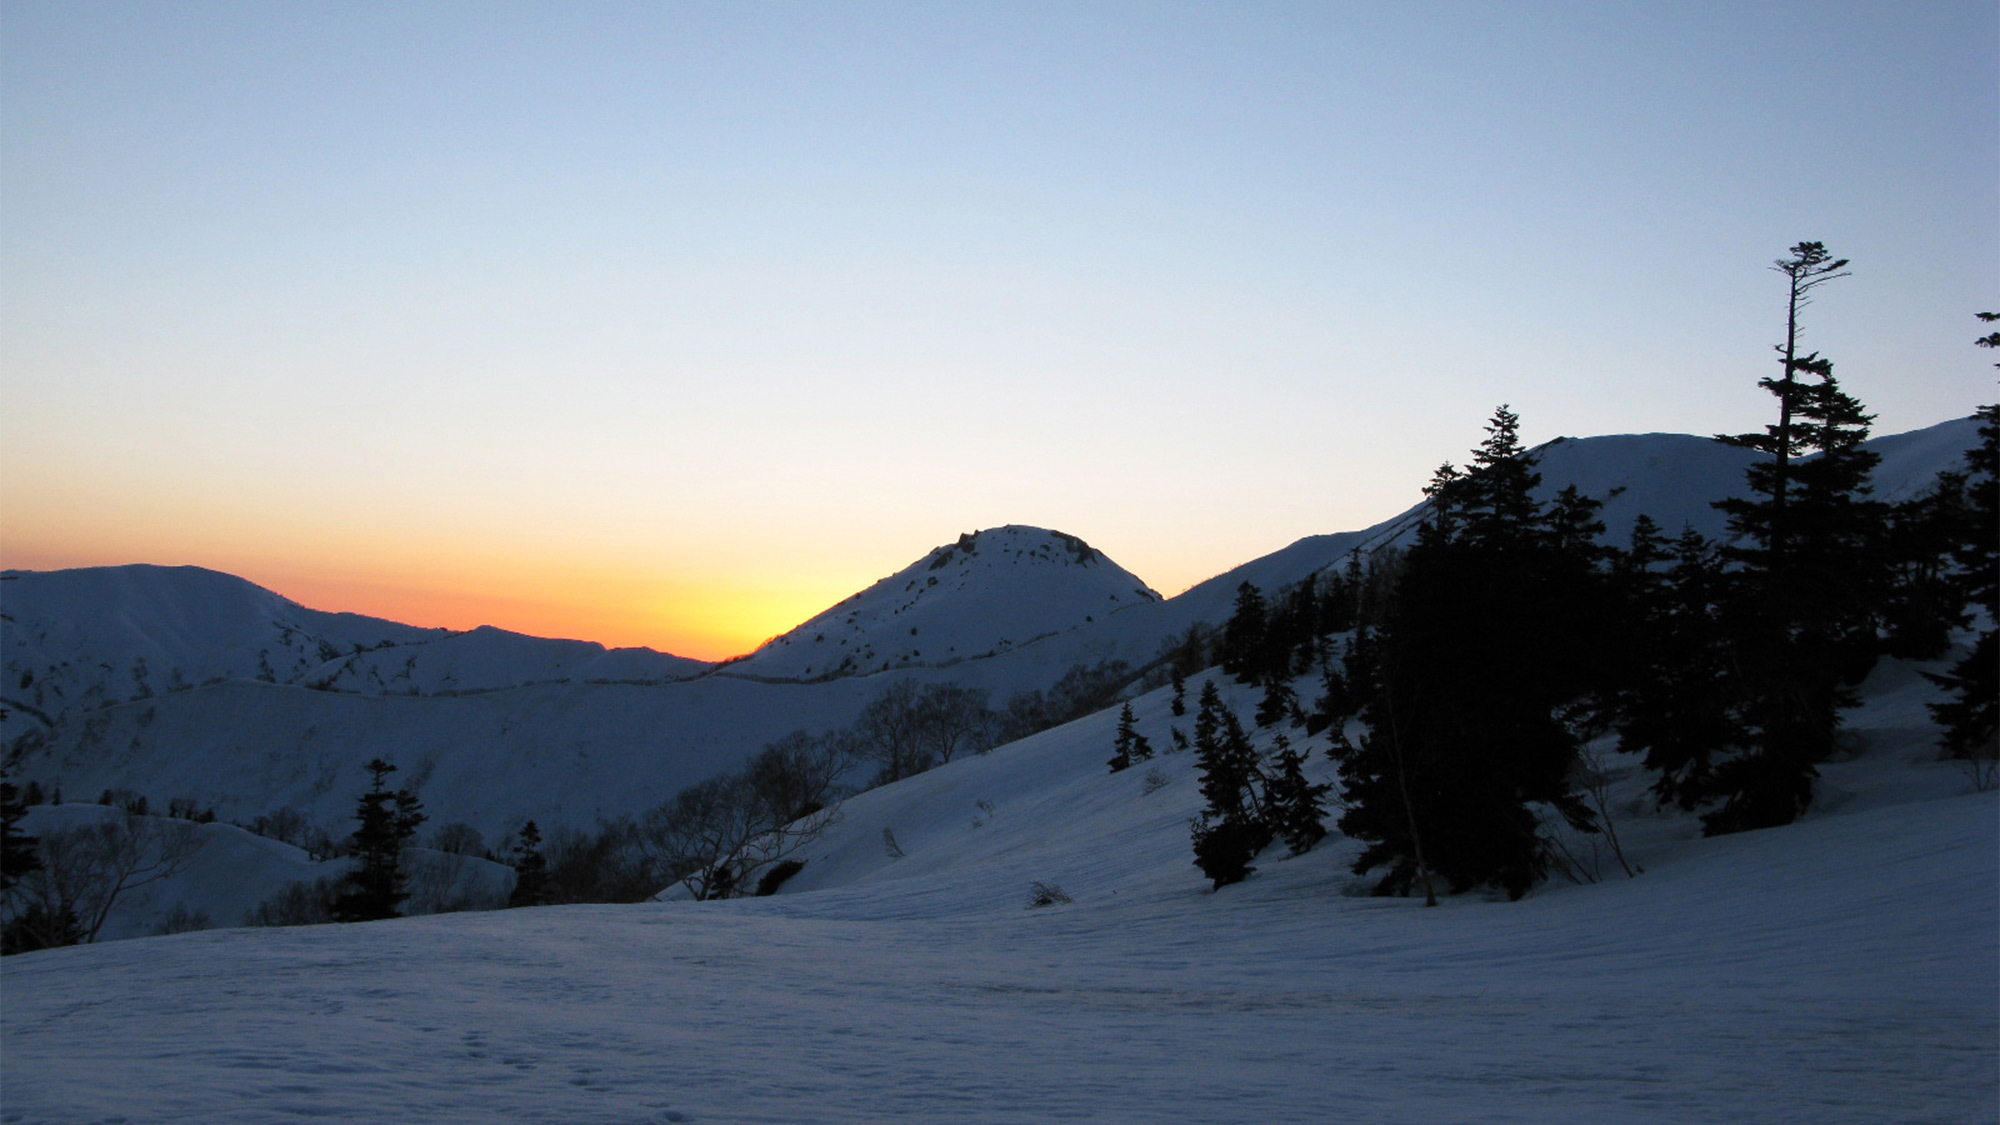 ・＜自然＞冬の時期は、雪の白さがオレンジの夕日を一層引き立てます